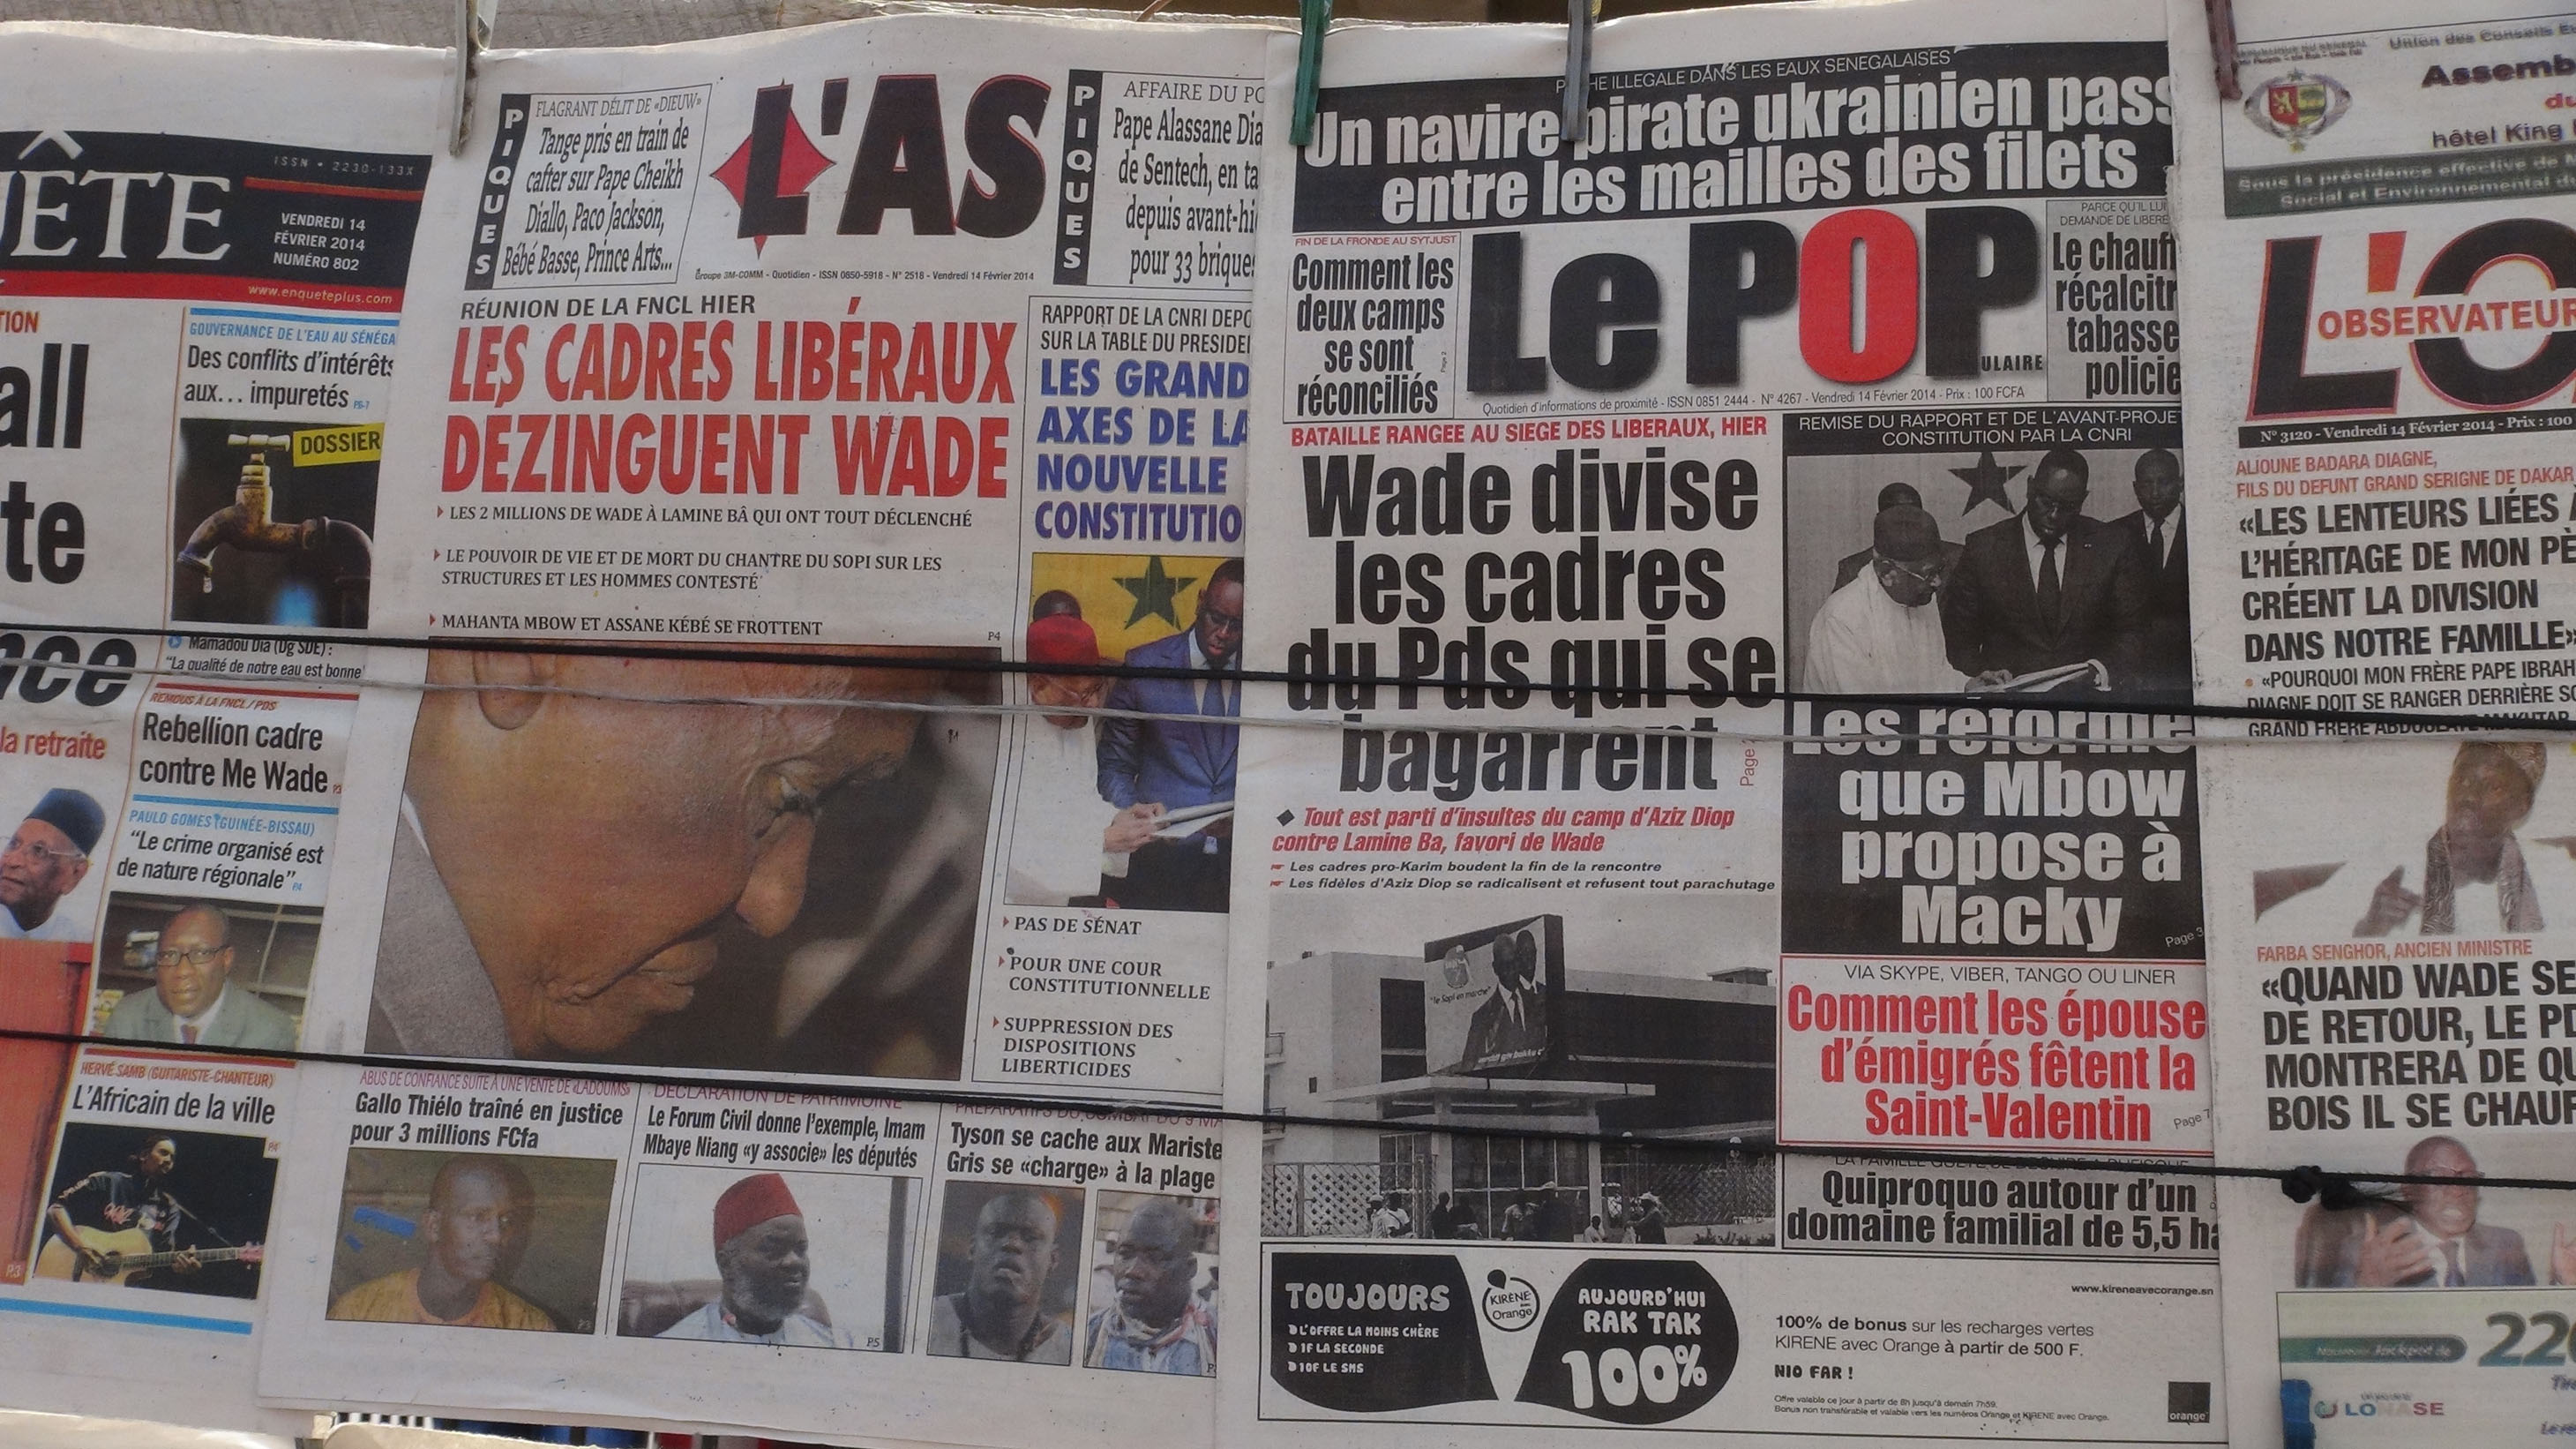 Presse-revue: Tahibou Ndiaye fait la Une des quotidiens